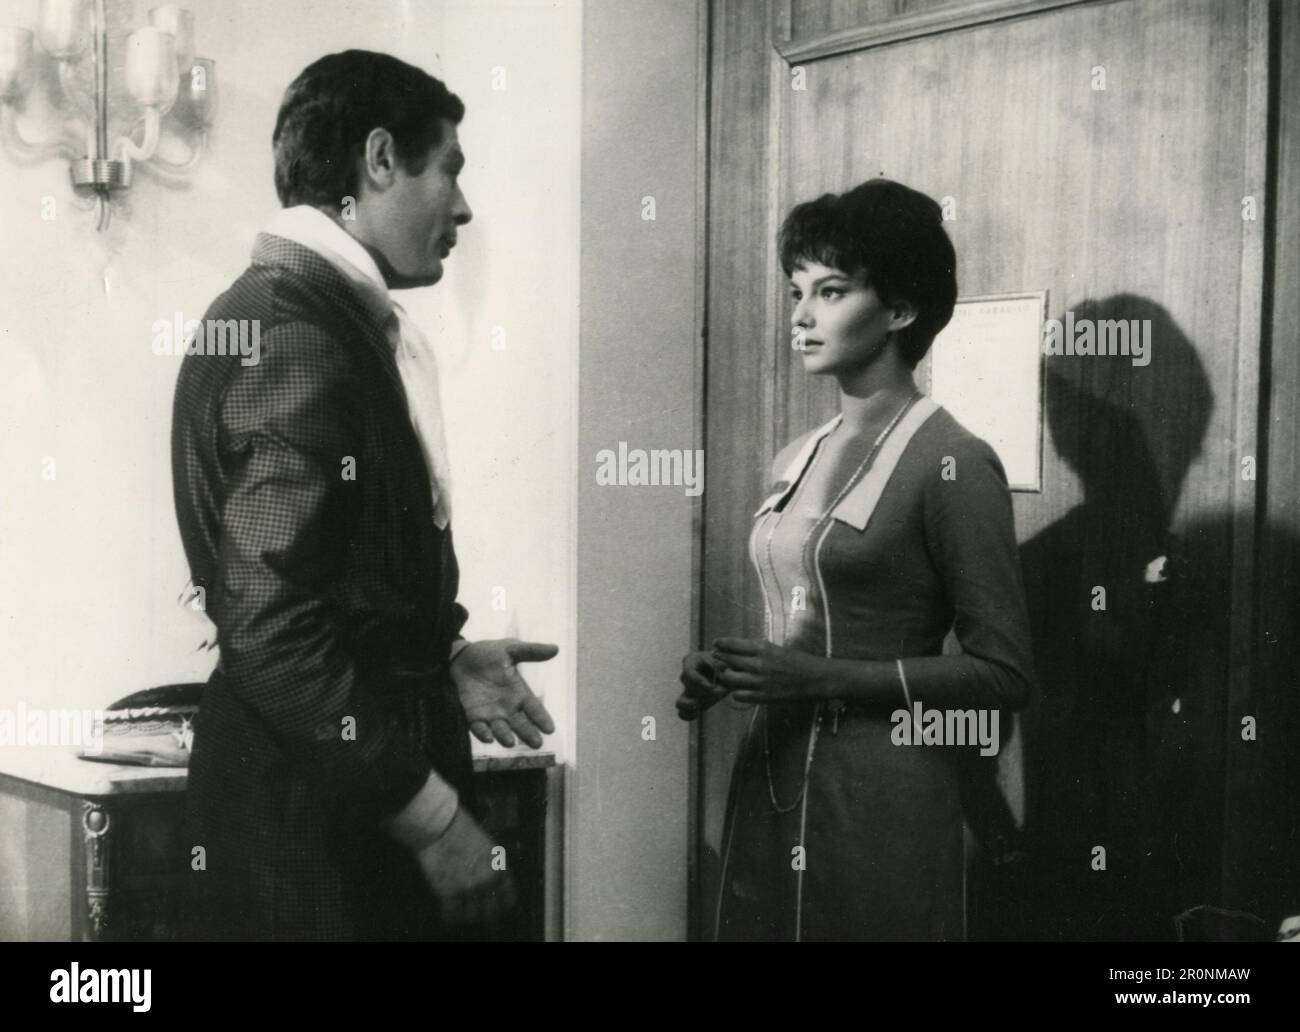 Les acteurs grecs Alekos Alexandrakis et Lili Papagianni dans le film Despoinis diefthyntis, Grèce 1964 Banque D'Images